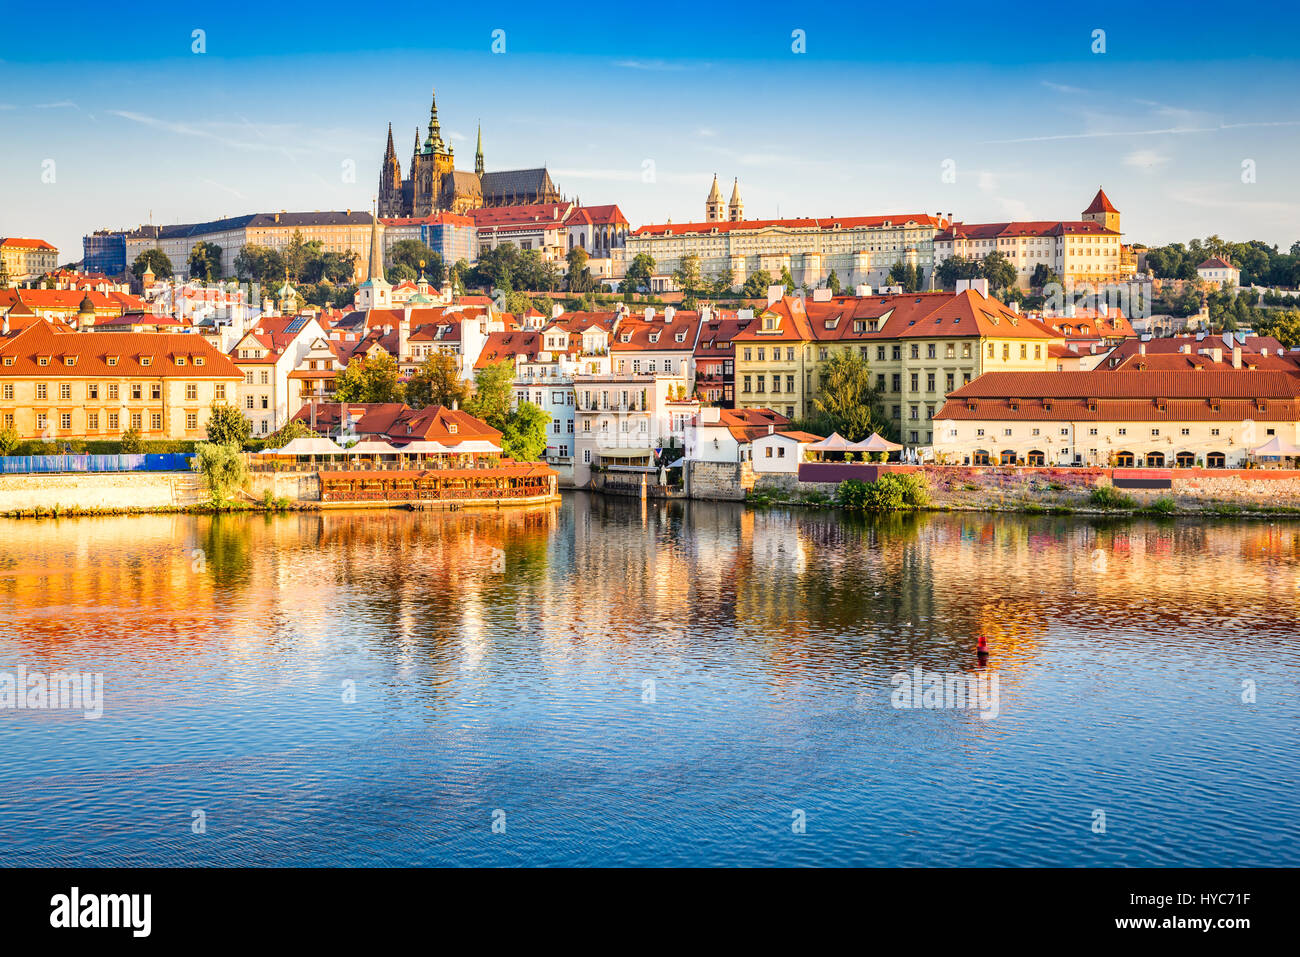 Prag, Böhmen, Tschechien. hradschin ist der Praha schloss mit Kirchen, Kapellen, Hallen und Türme aus jeder Periode seiner Geschichte. Stockfoto